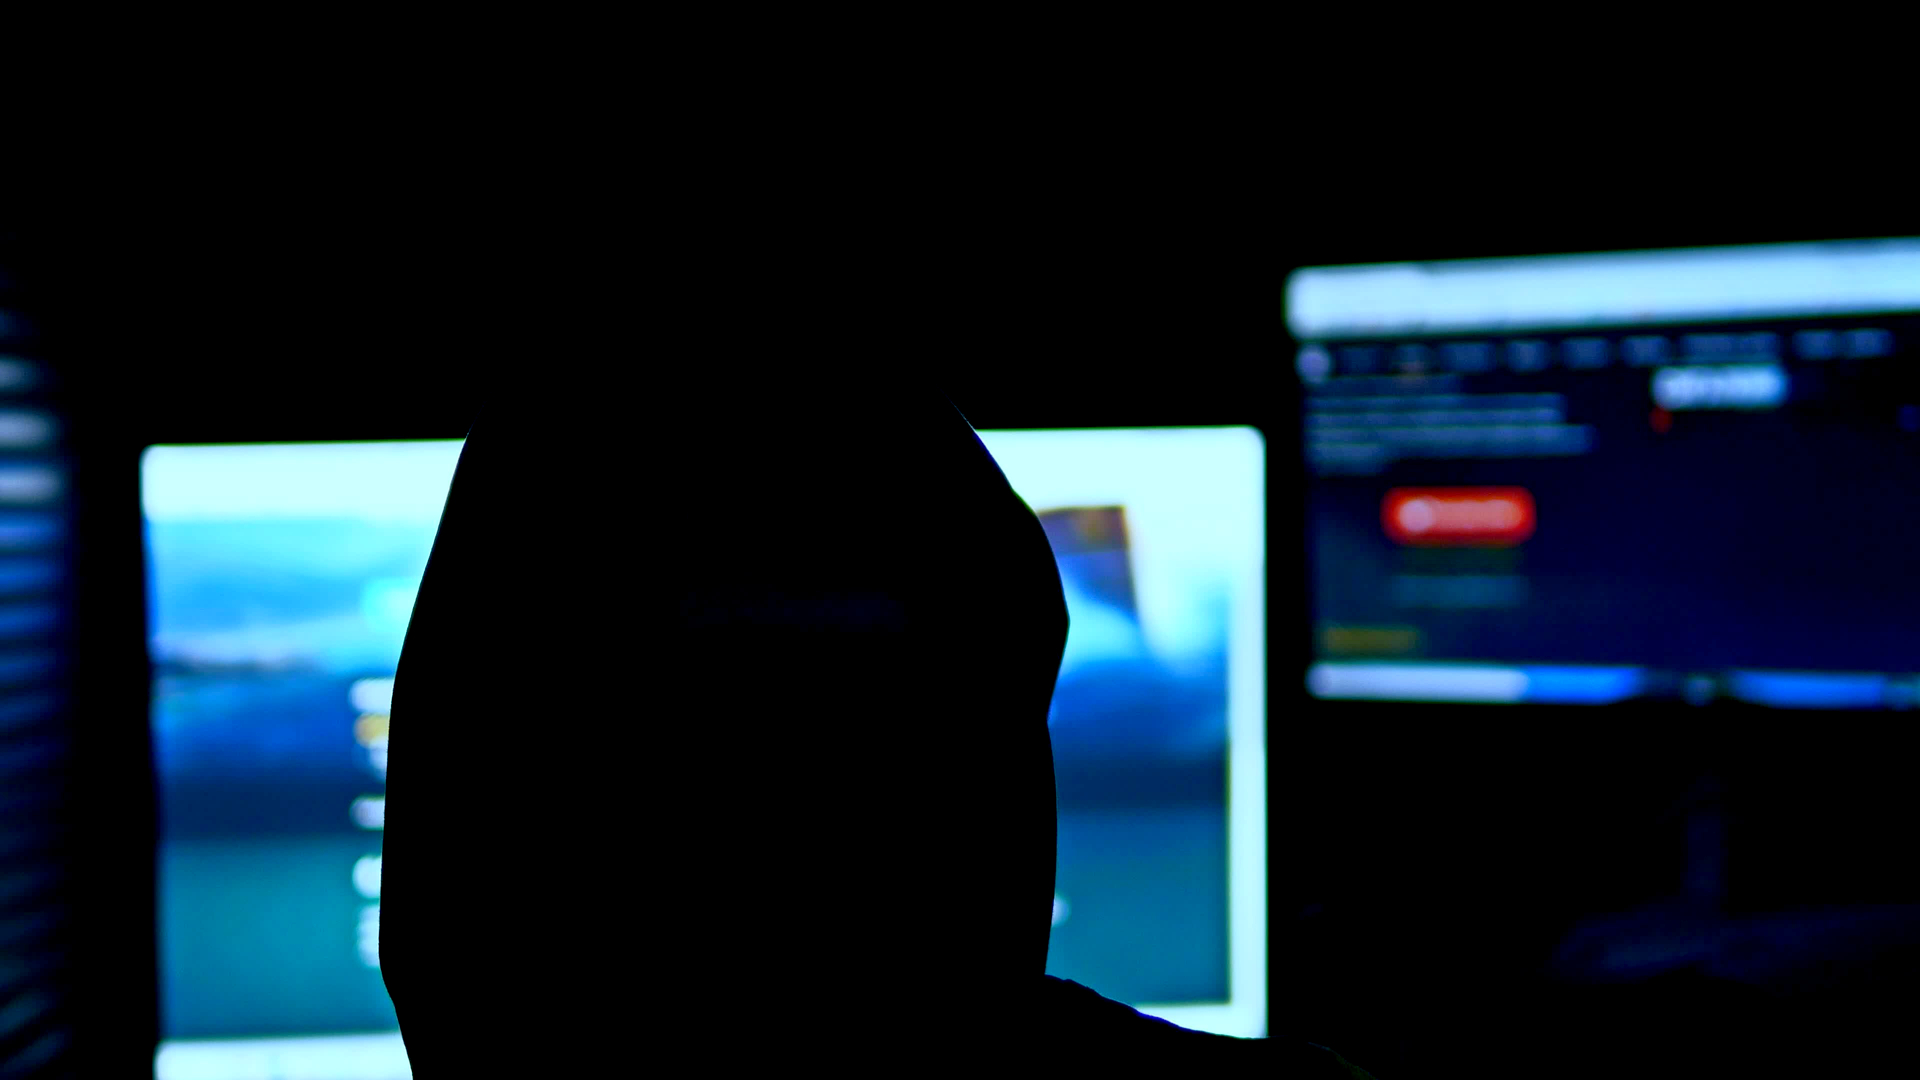 Analýza hrozeb: firmám hrozí napadení hlavně ransomwarem